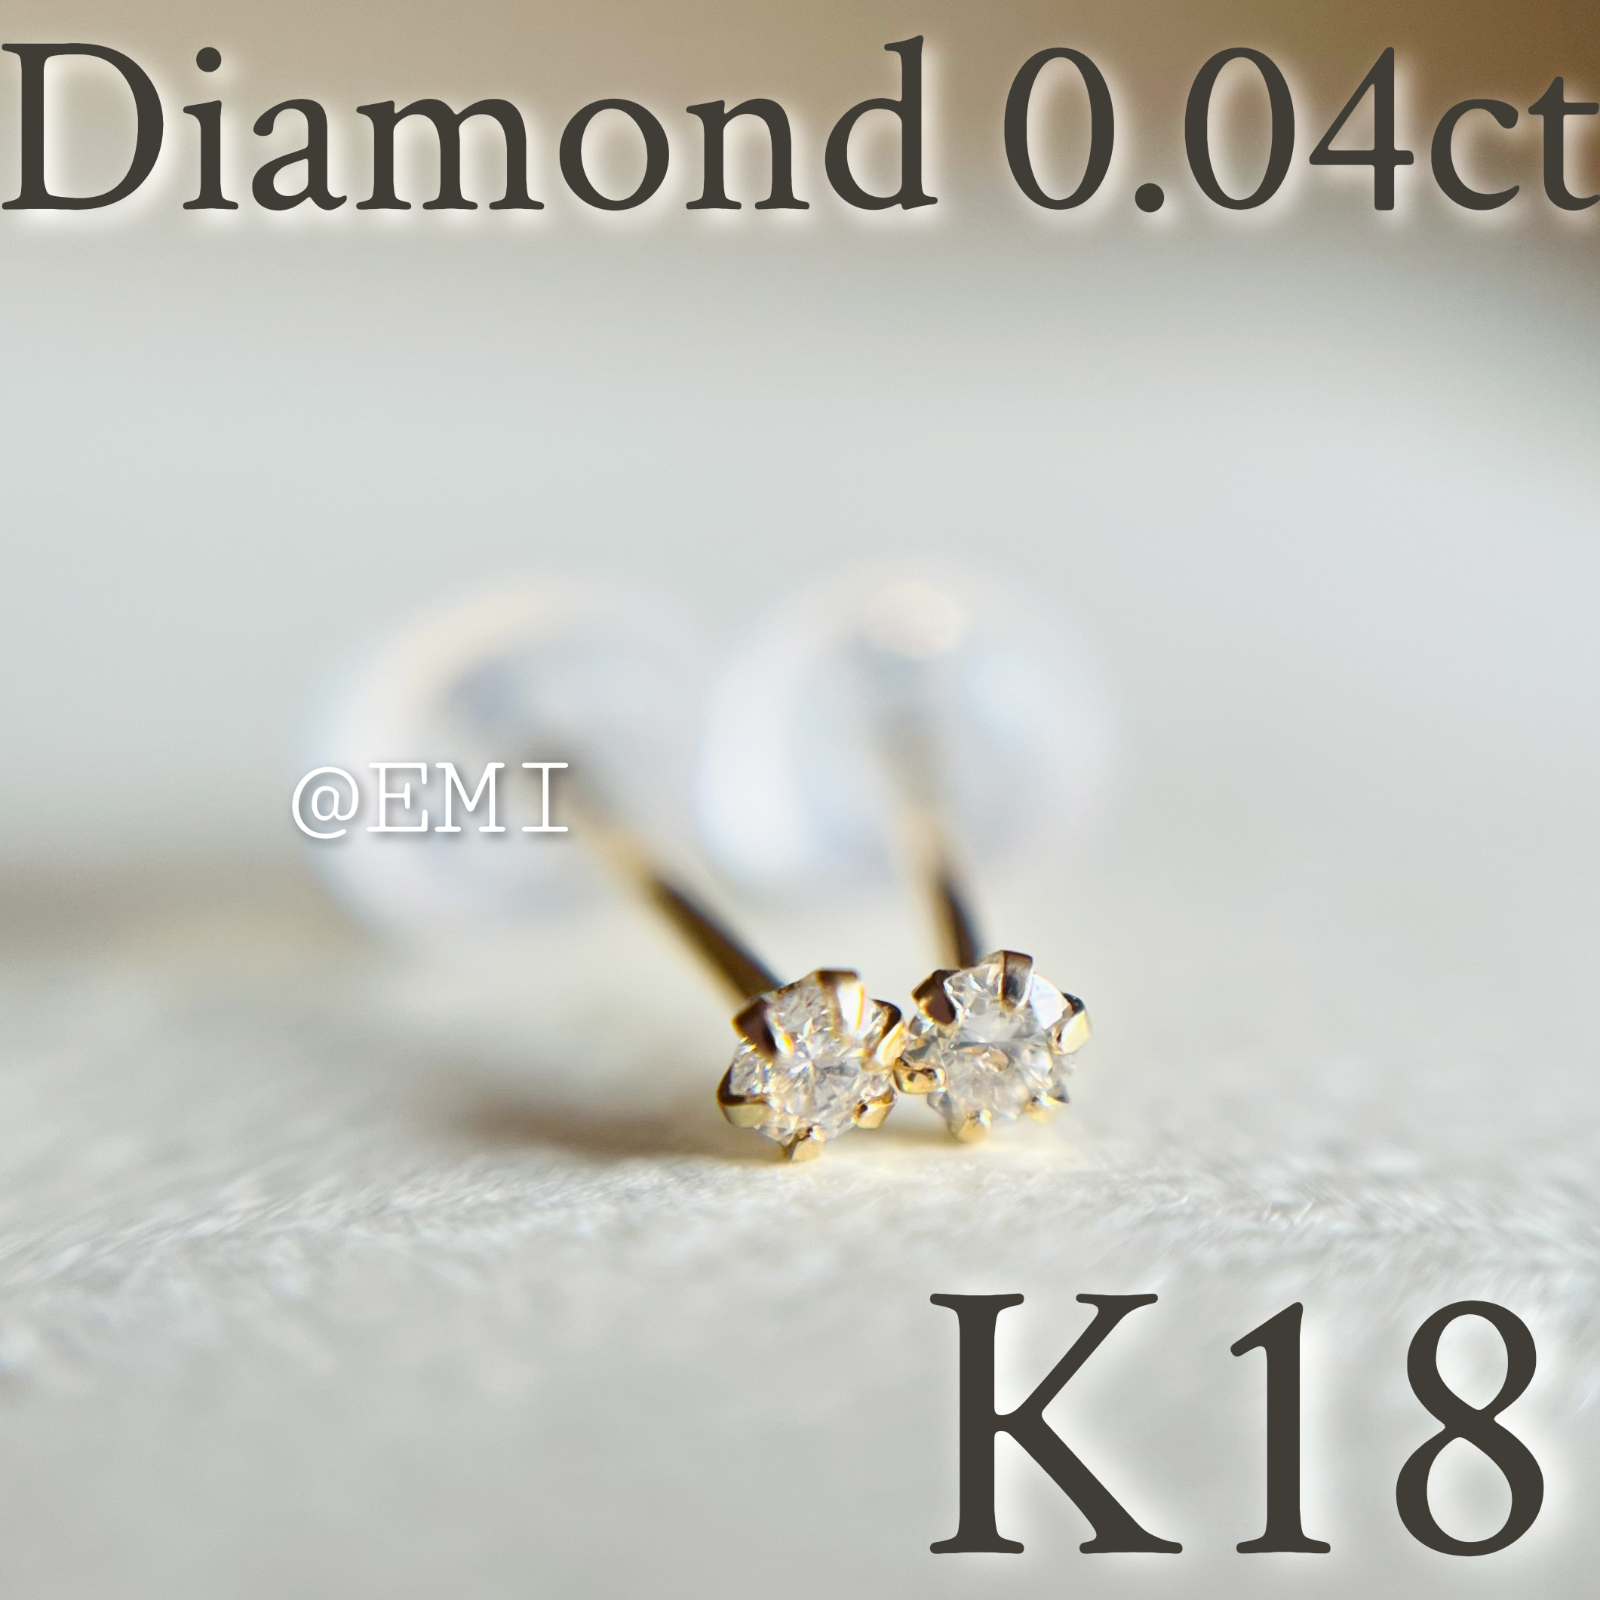 ♡K18·ダイヤモンド 0.08ct♡ハート スタッド ピアス K18キャッチ-